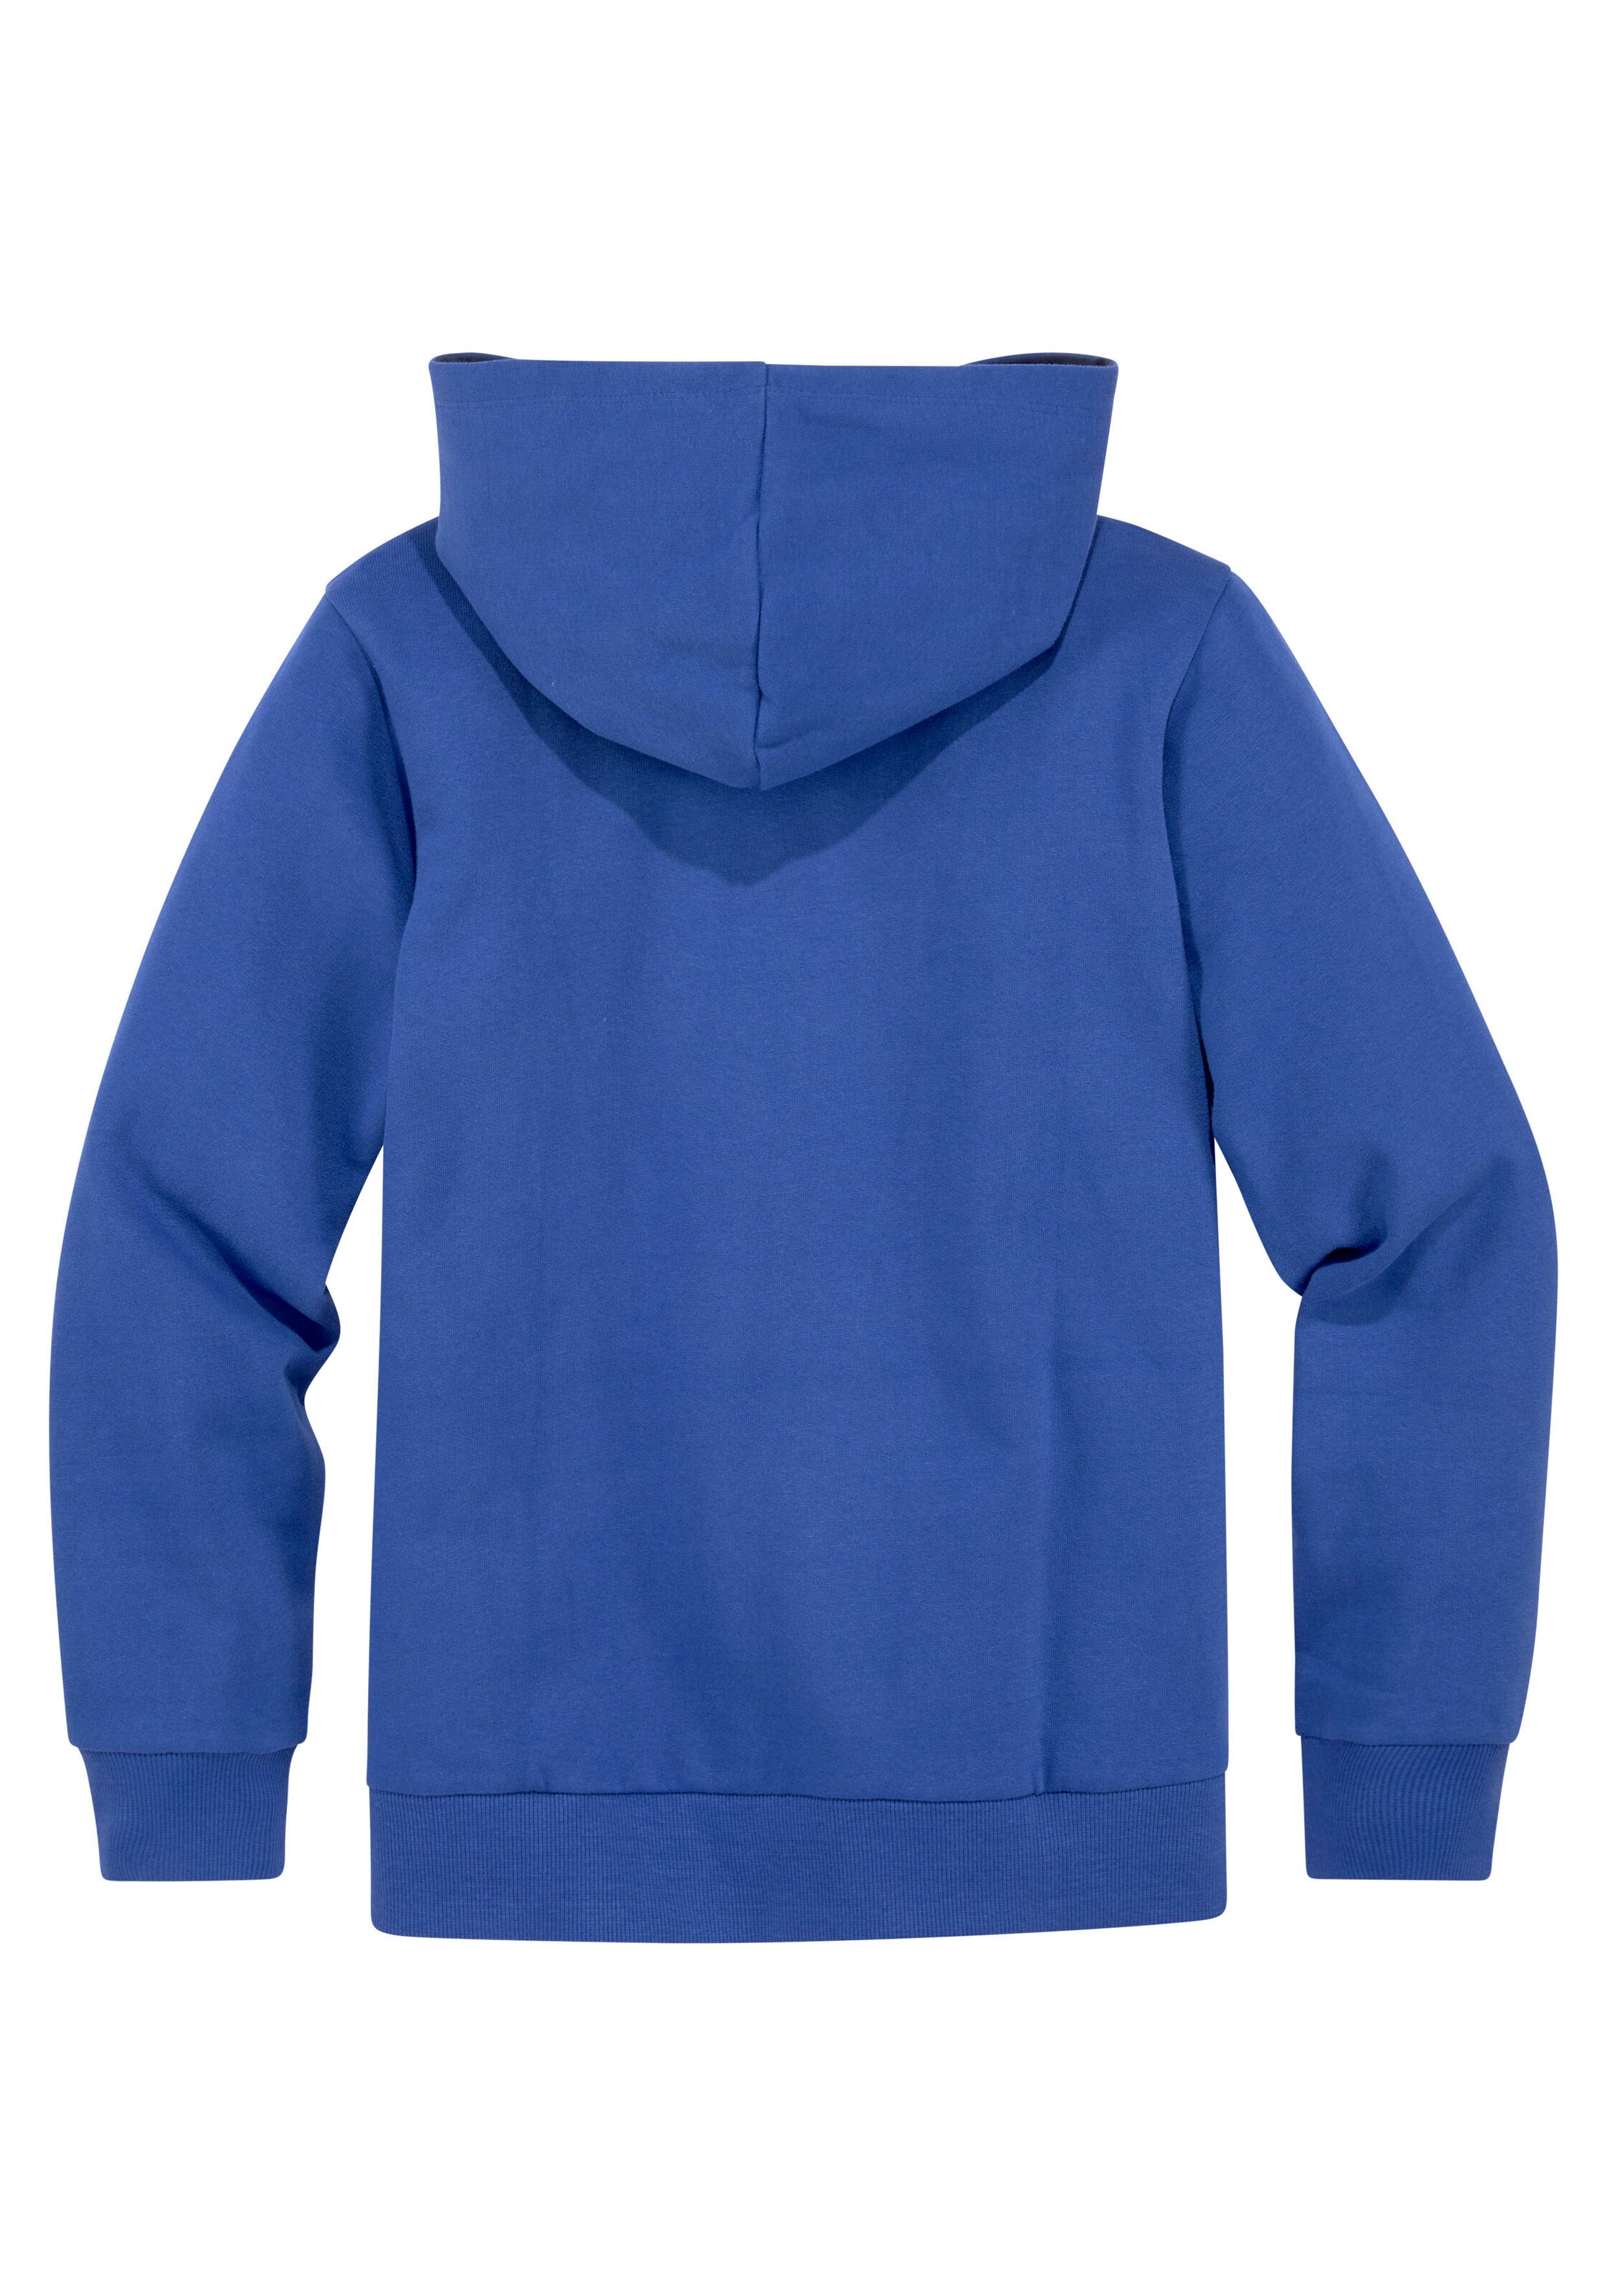 Kinder Teens (Gr. 140-176) KangaROOS Sweatshirt in Dunkelblau - IQ54773